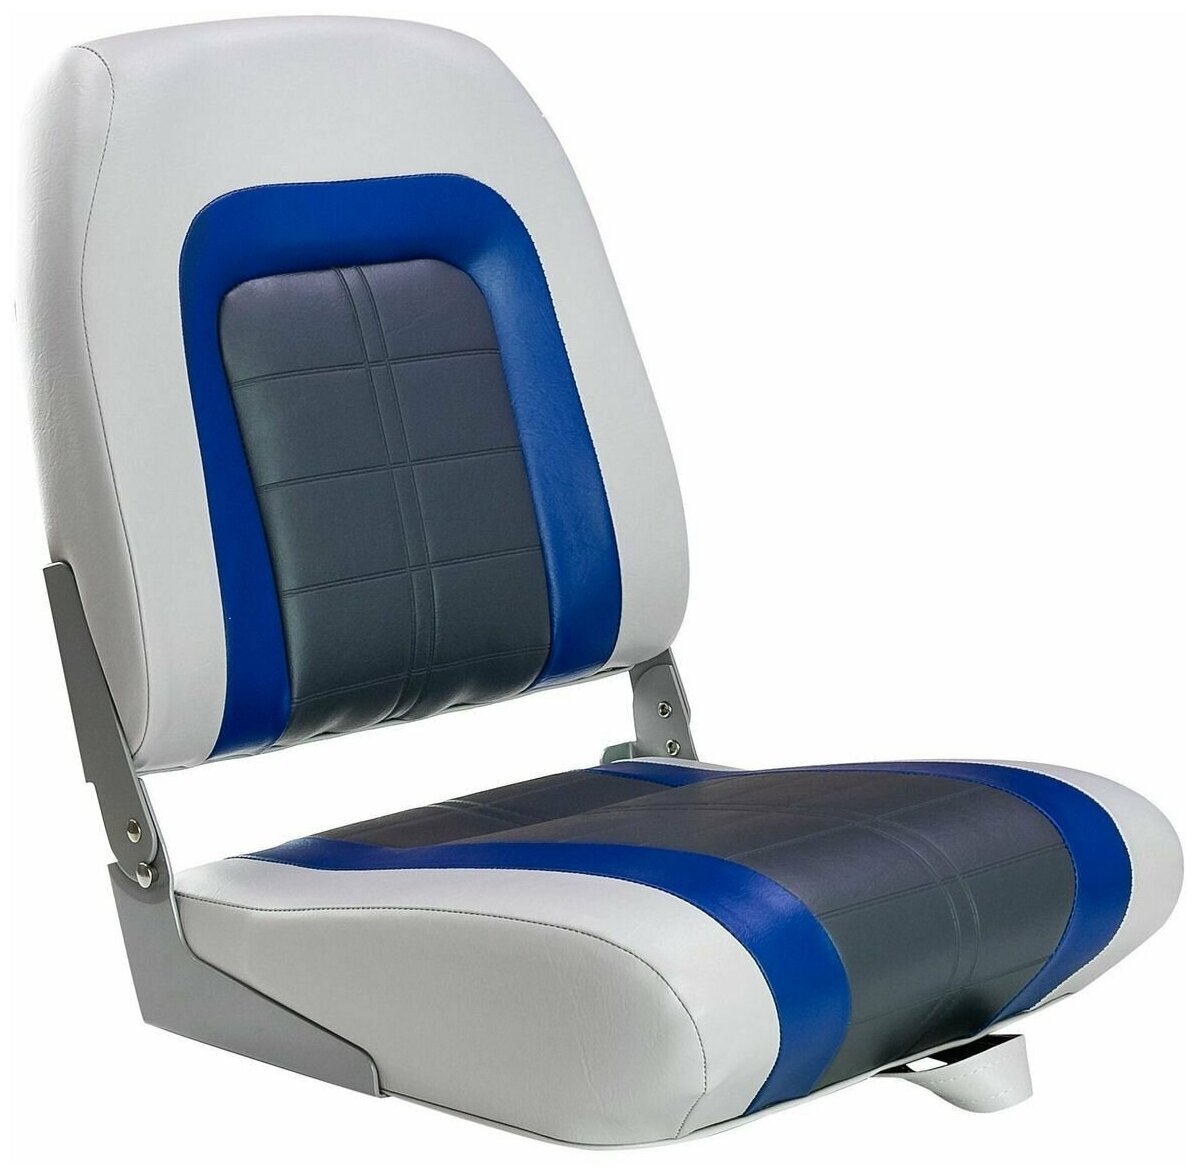 Кресло мягкое складное Special, обивка винил, цвет серый/синий/угольный, Marine Rocket 76236GBC-MR - фотография № 1